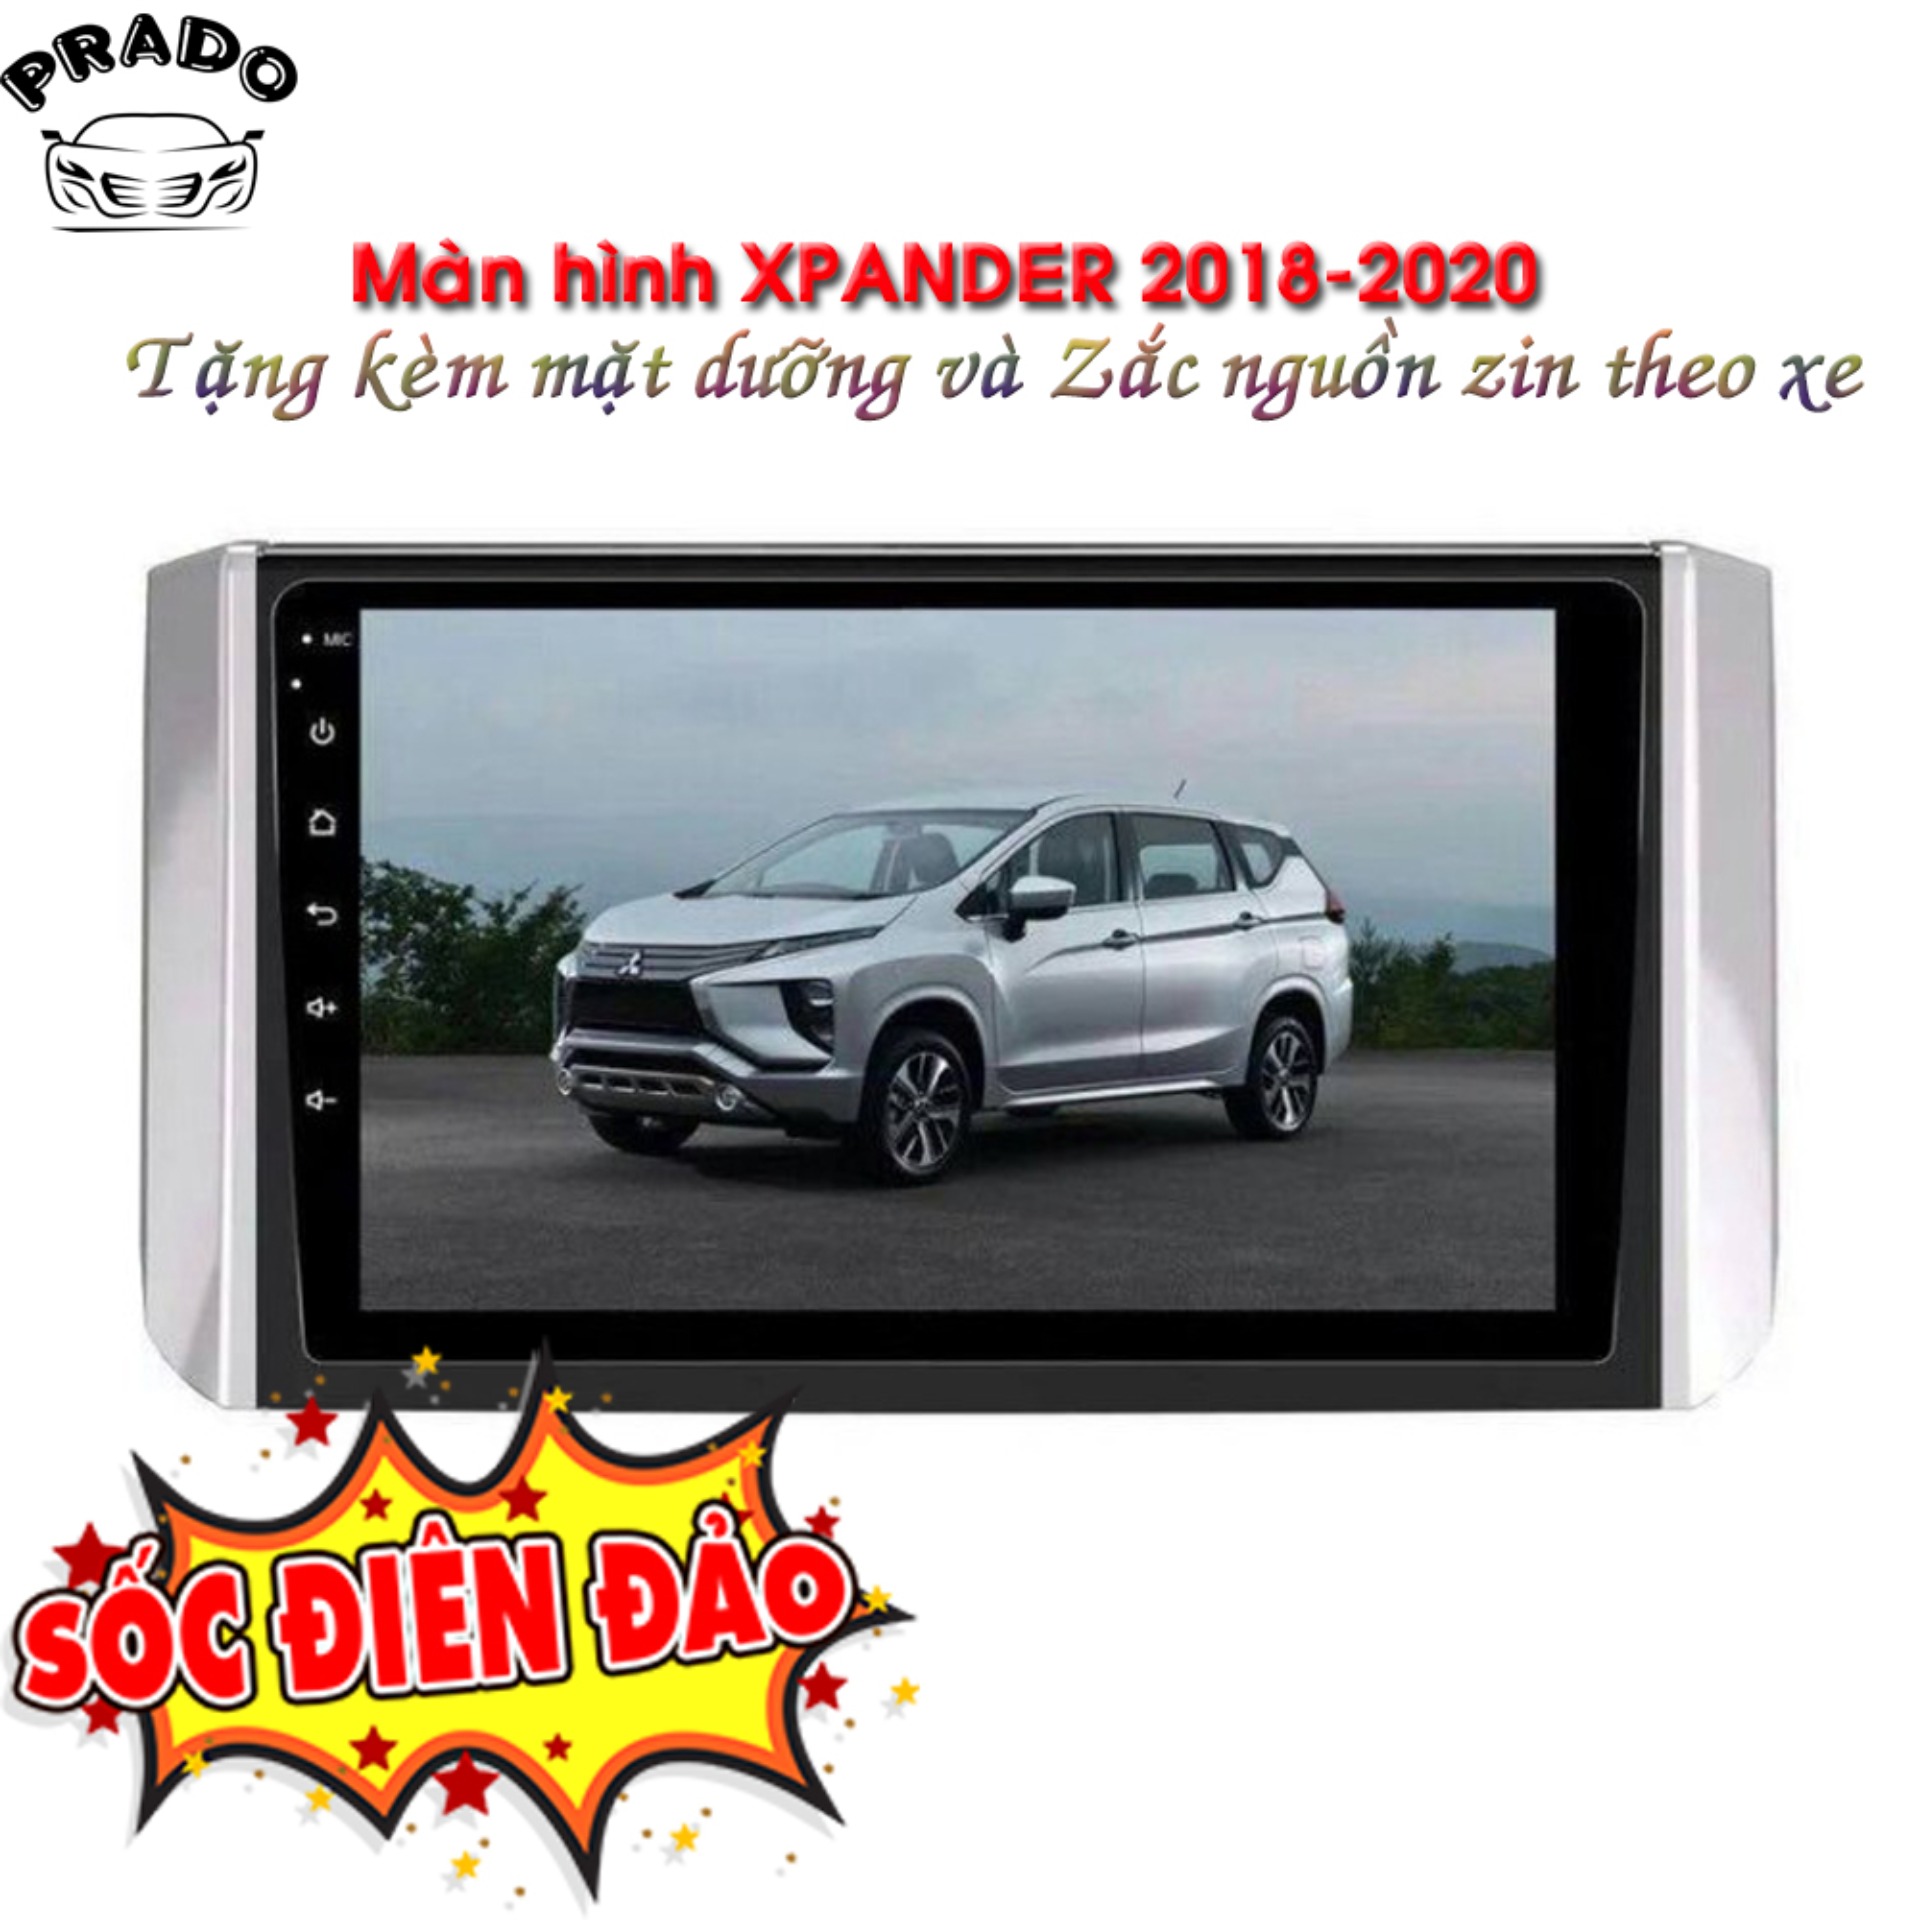 Màn hình android 9 inch lắp đặt theo xe Mitsubishi XPANDER 2018 2019 2020 2021 Tặng mặt dưỡng + Tặng zắc zin theo xe xpander, Màn hình Xpander 2018, 2020, 2021, Màn hình DVD Android cho xe Mitsubishi Xpander